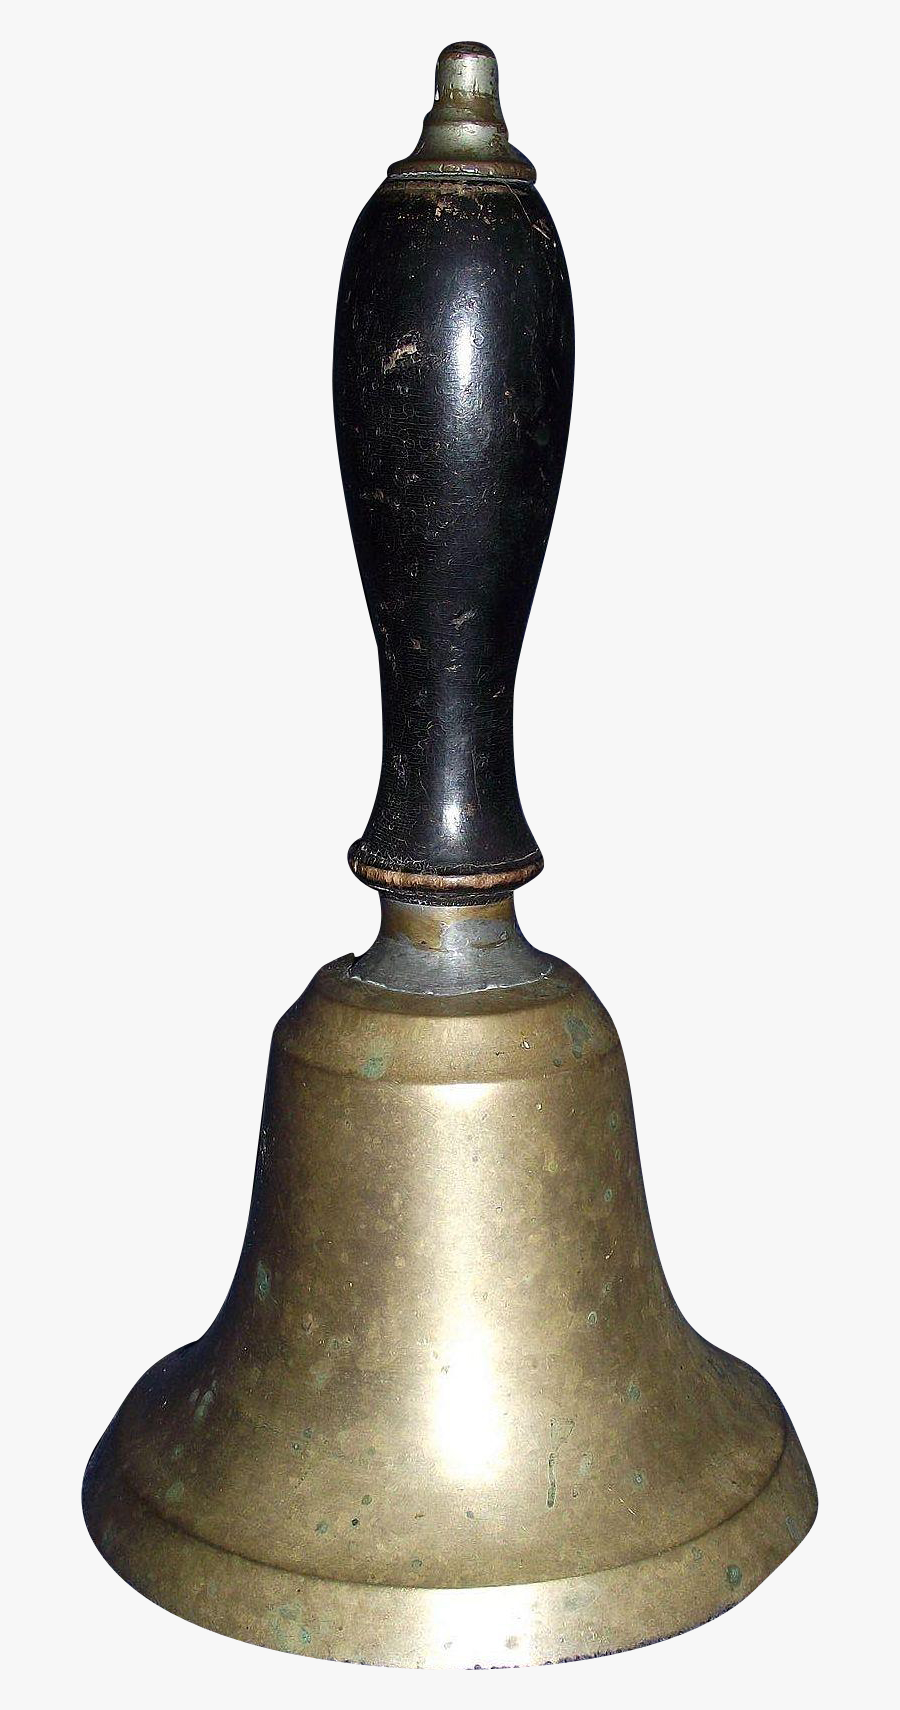 Hand Bell Png - Church Bell, Transparent Clipart